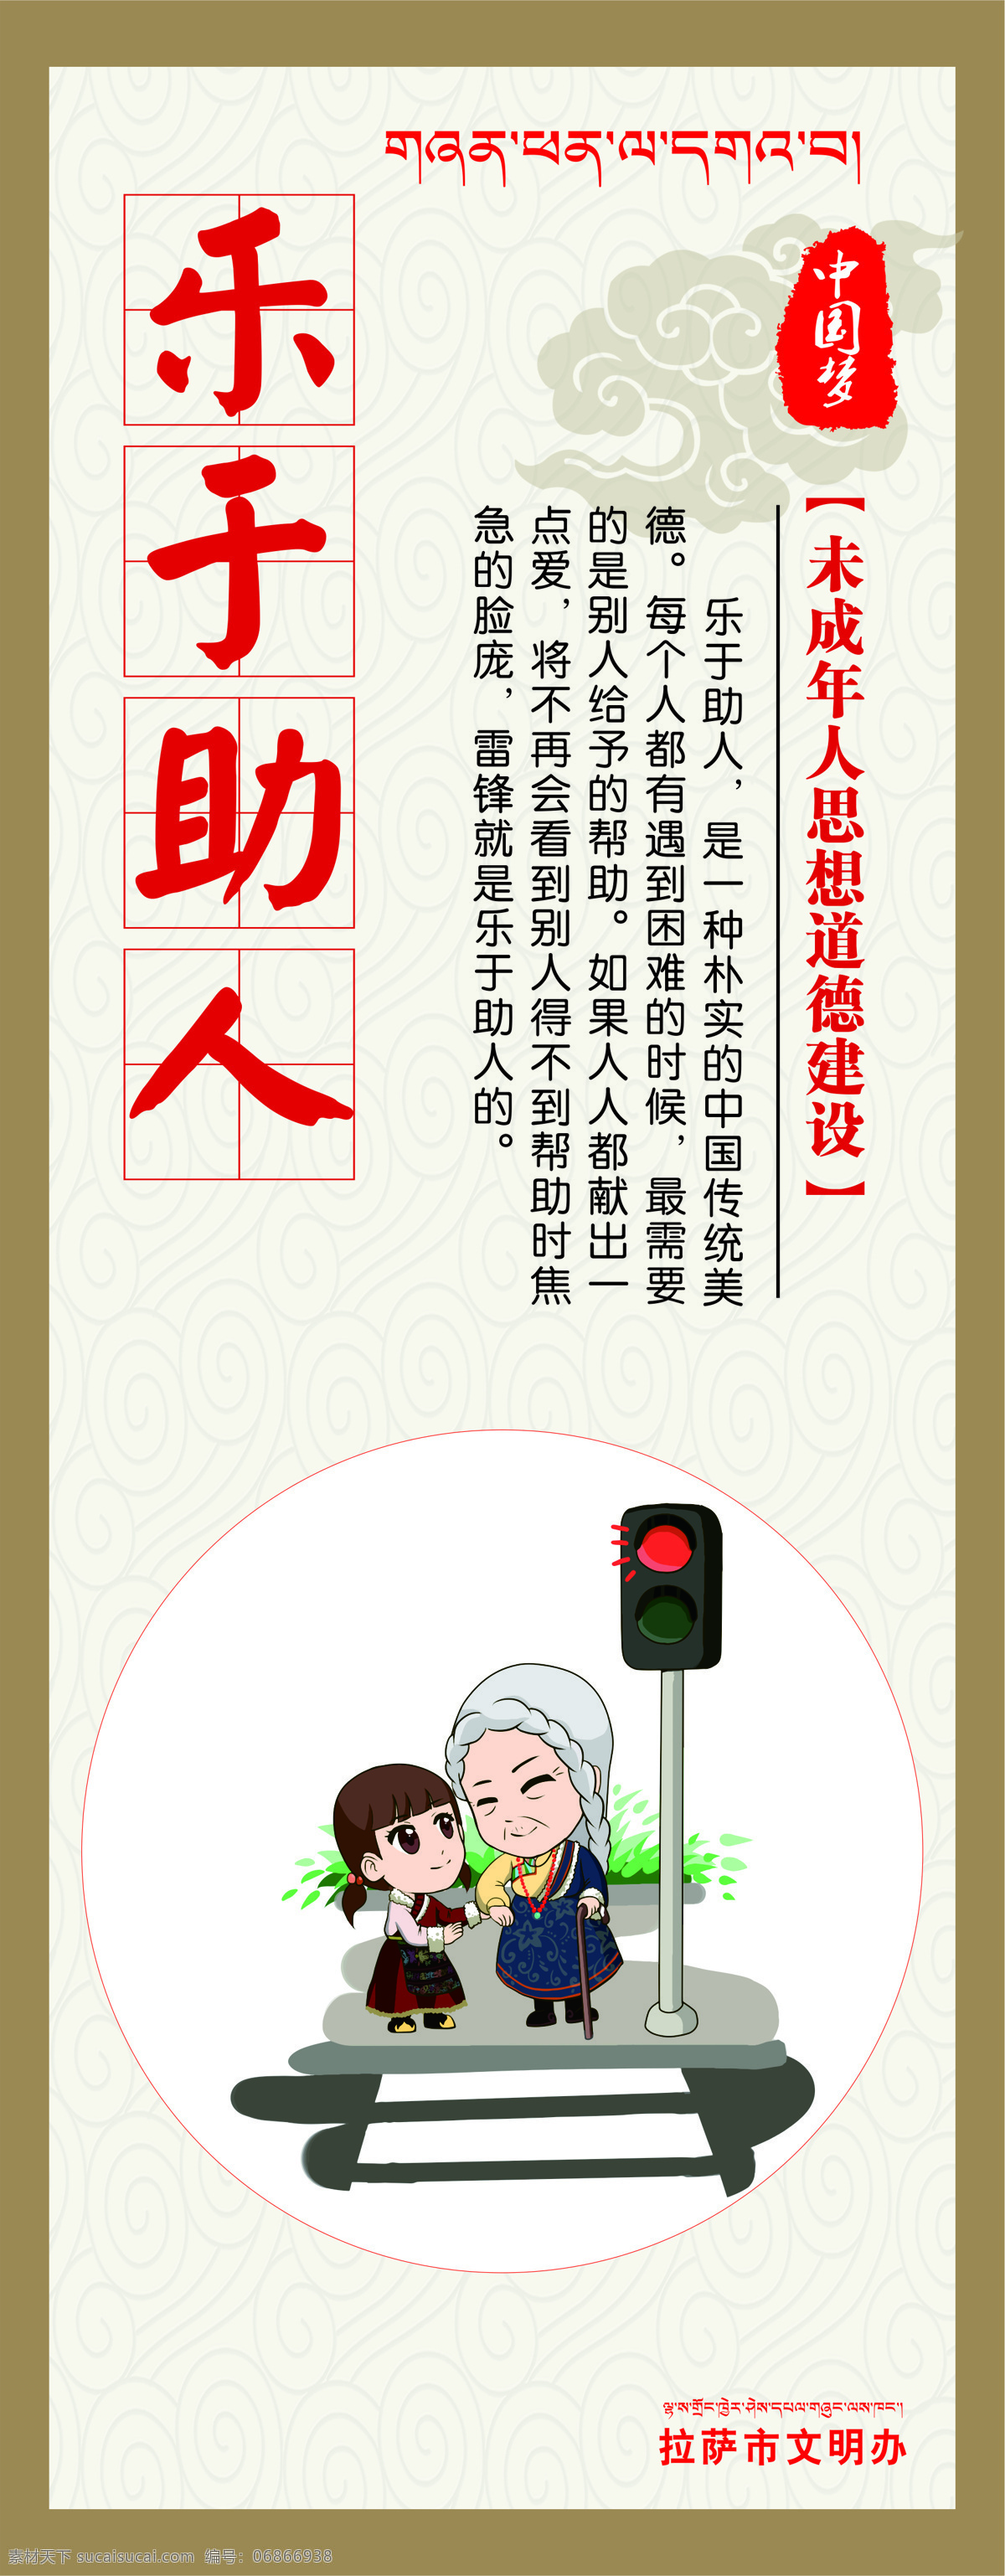 乐于助人 墙画 中国梦 卡通人物 文明办 西藏卡通人物 海报